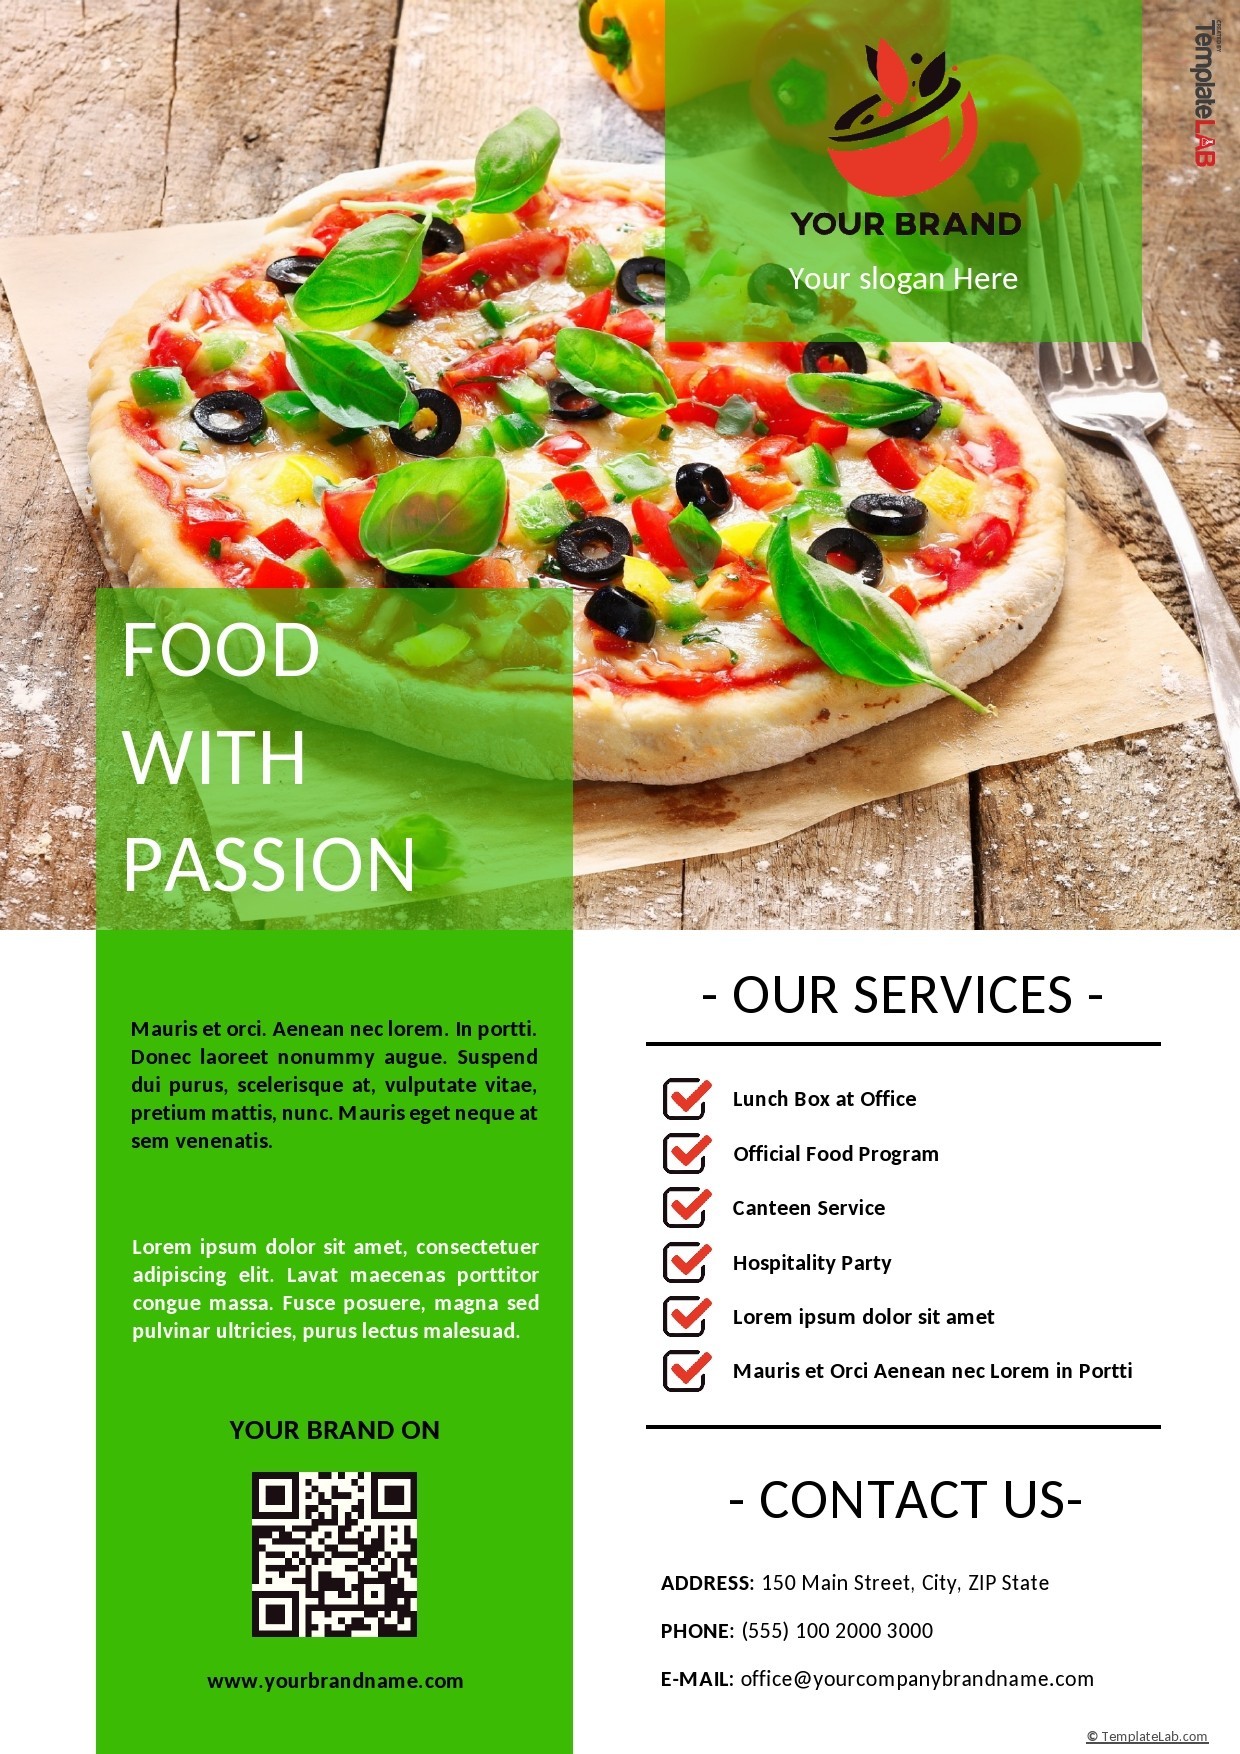 catering company profile presentation